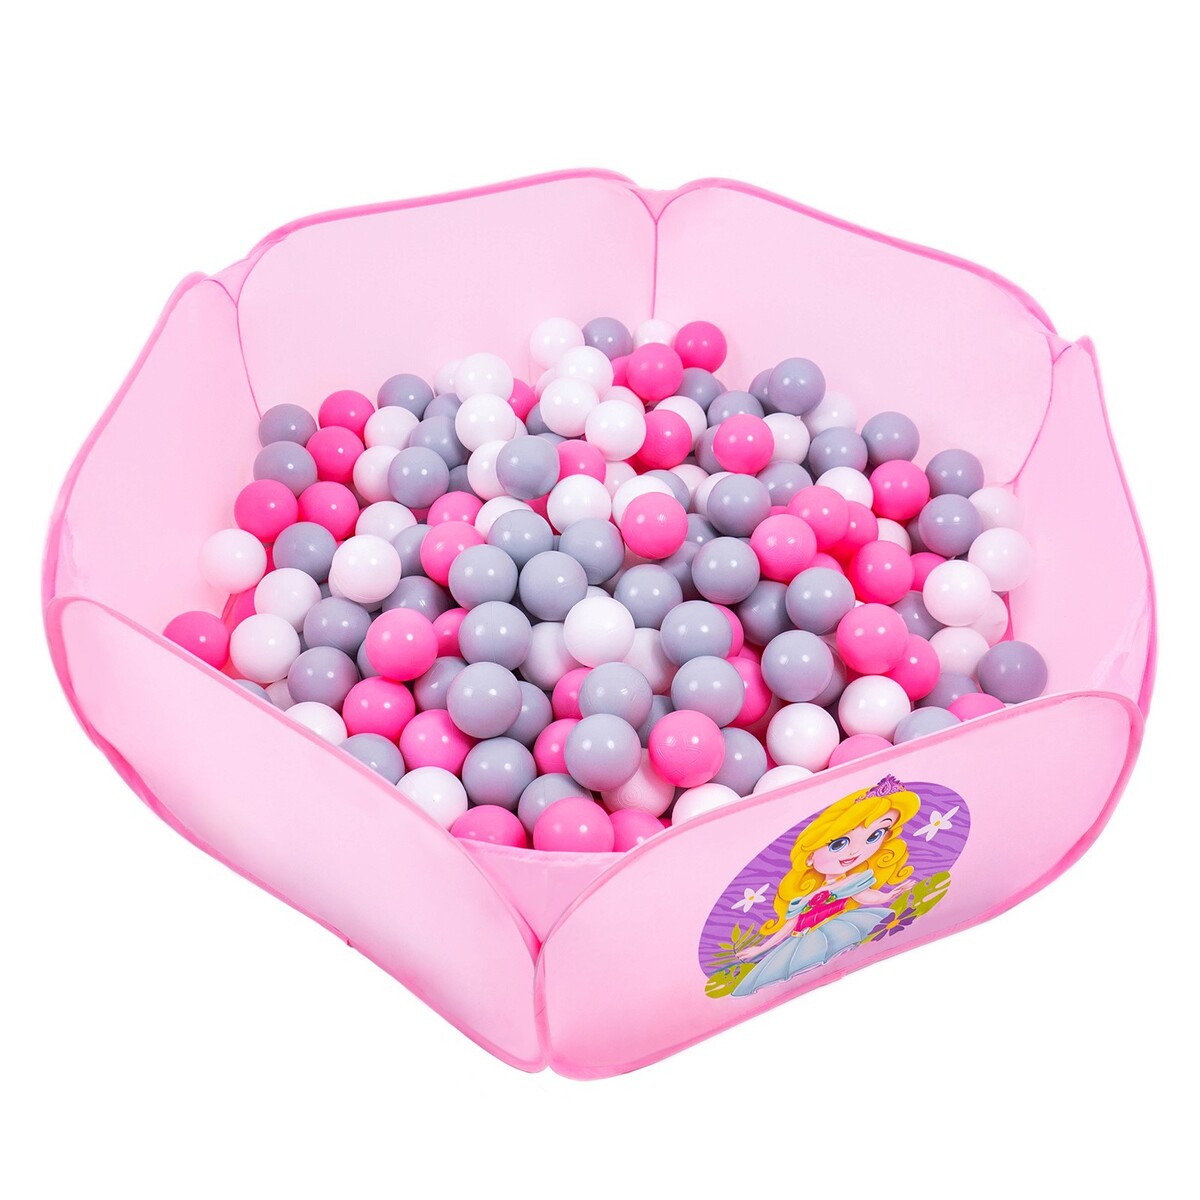 Шарики для сухого бассейна с рисунком, диаметр шара 7,5 см, набор 30 штук, цвет розовый, белый, серый